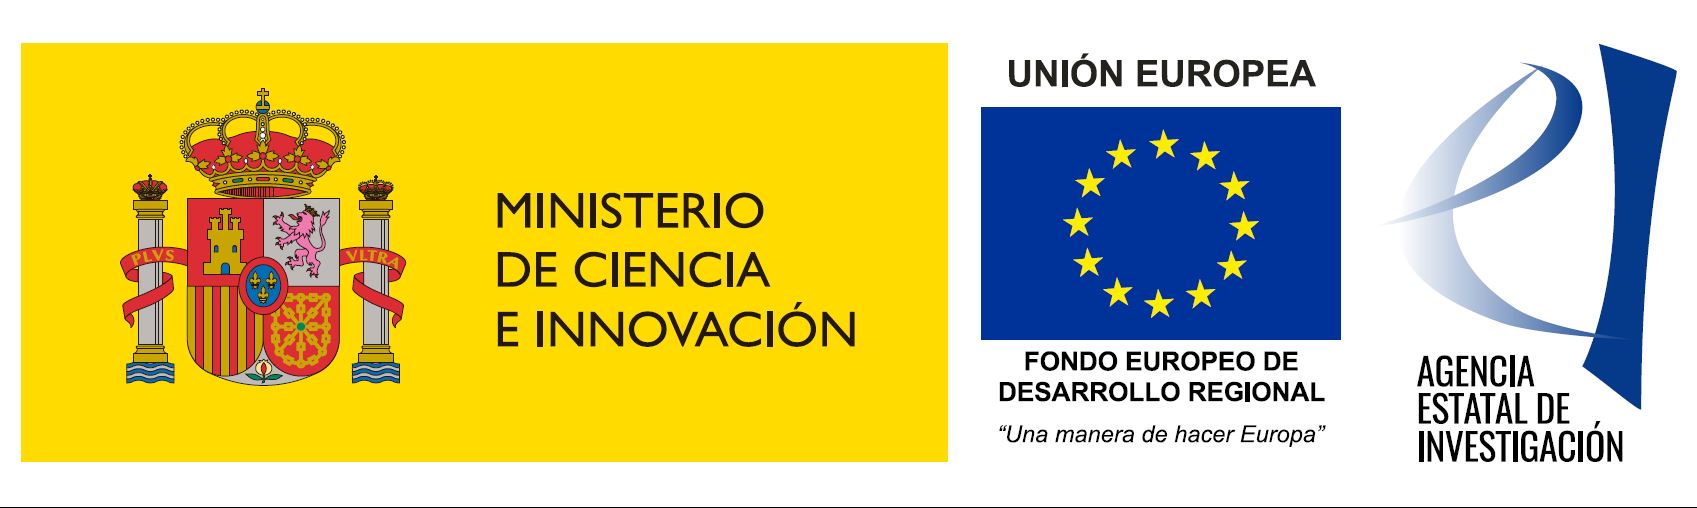 Ministerio de ciencia e innovación- financiación